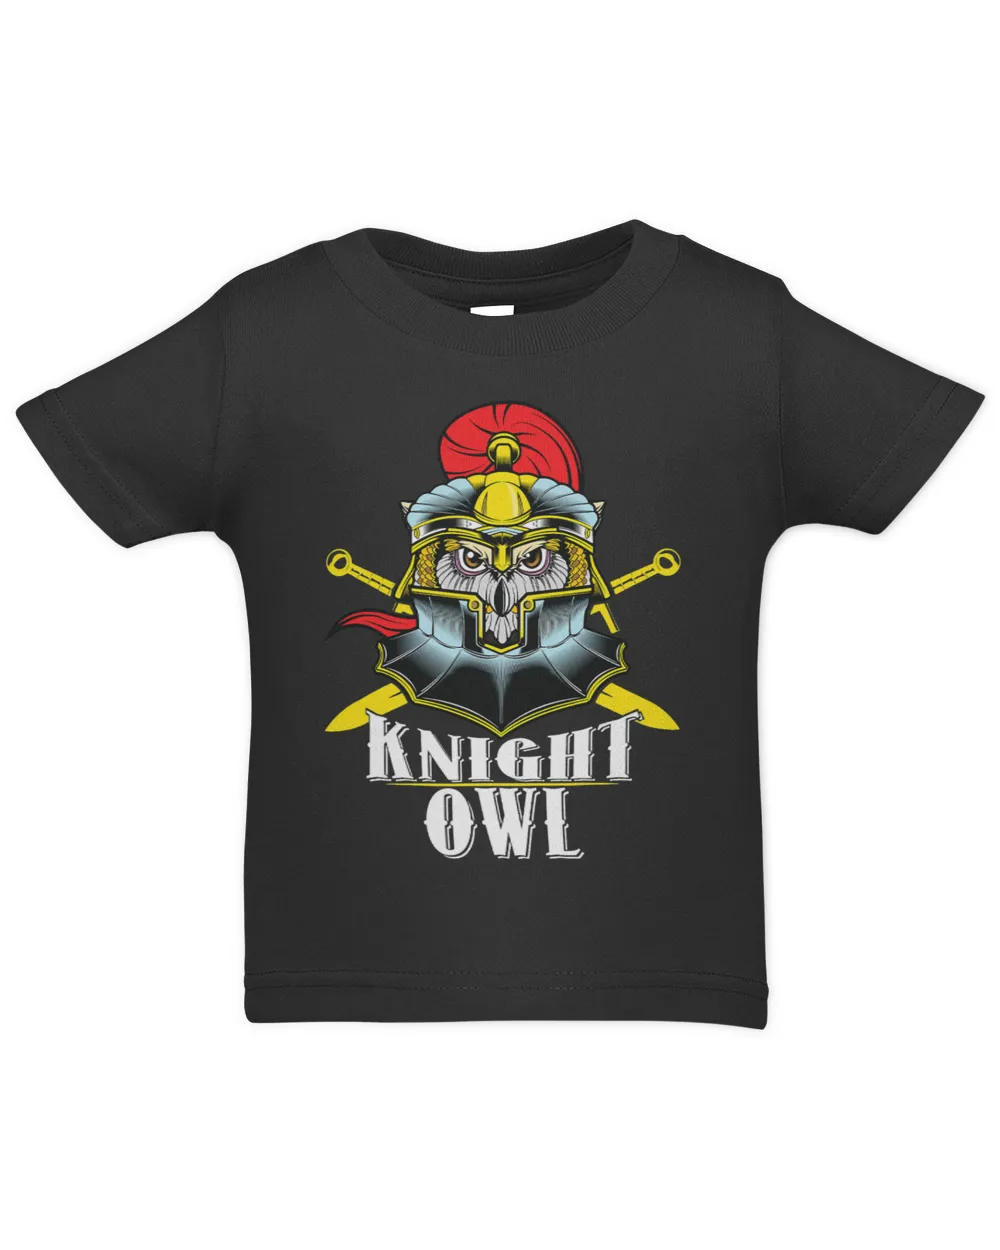 Knight Owl Night Owls Insomniac Medieval Knights